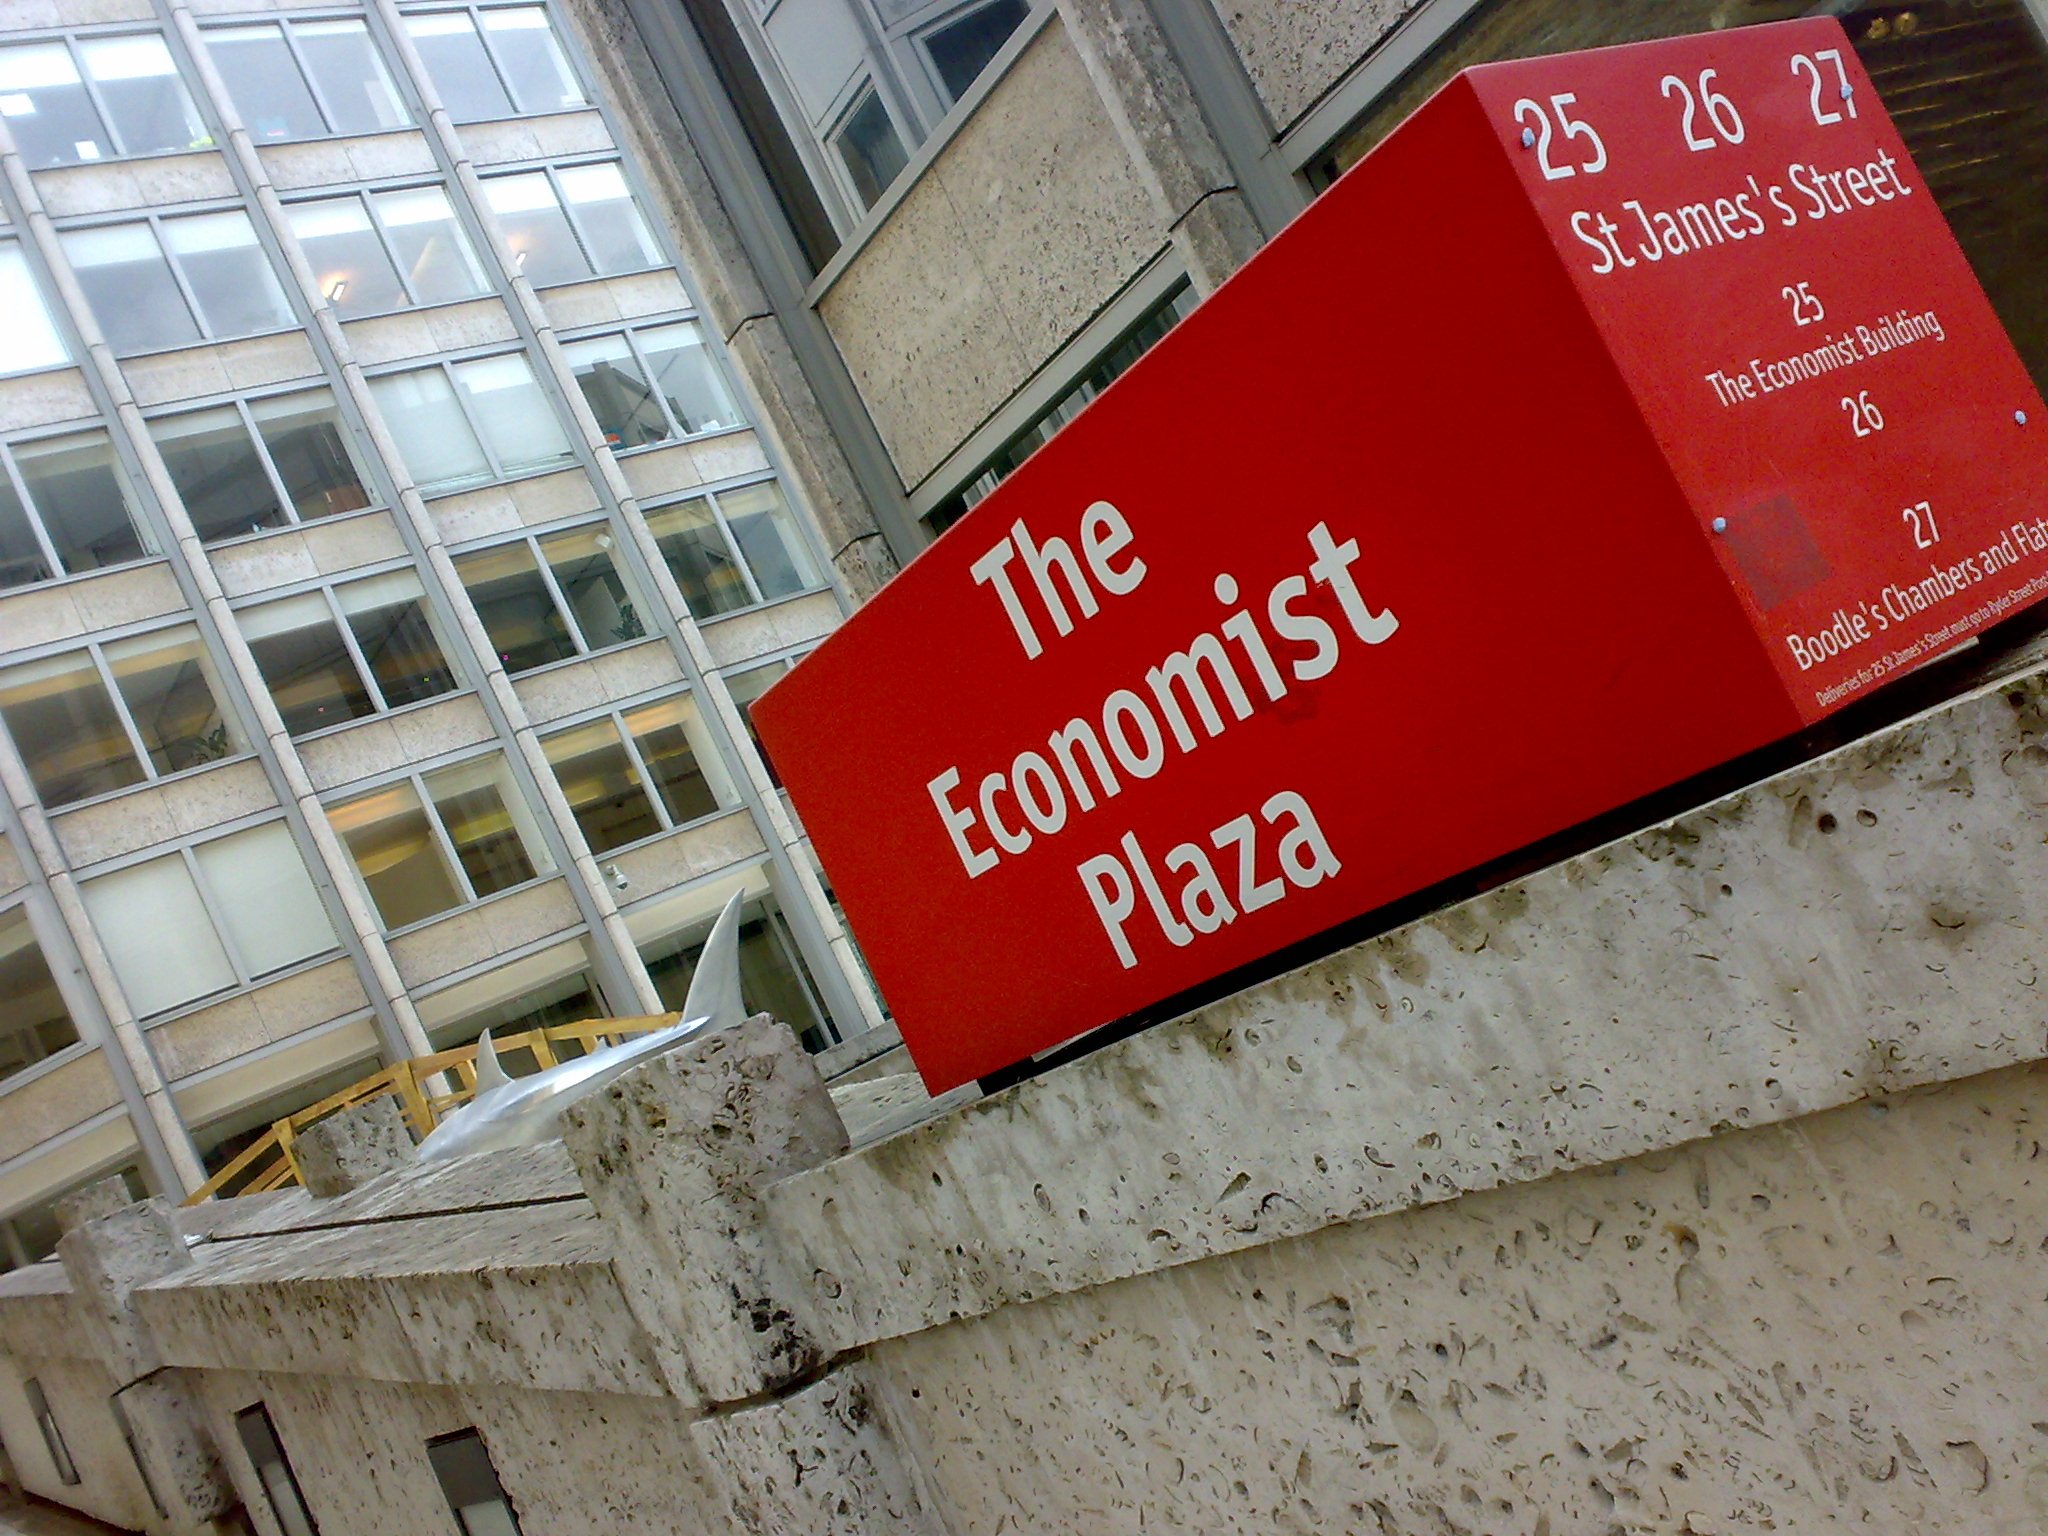 'The Economist', alarmat per la deriva de Ciutadans cap a la dreta